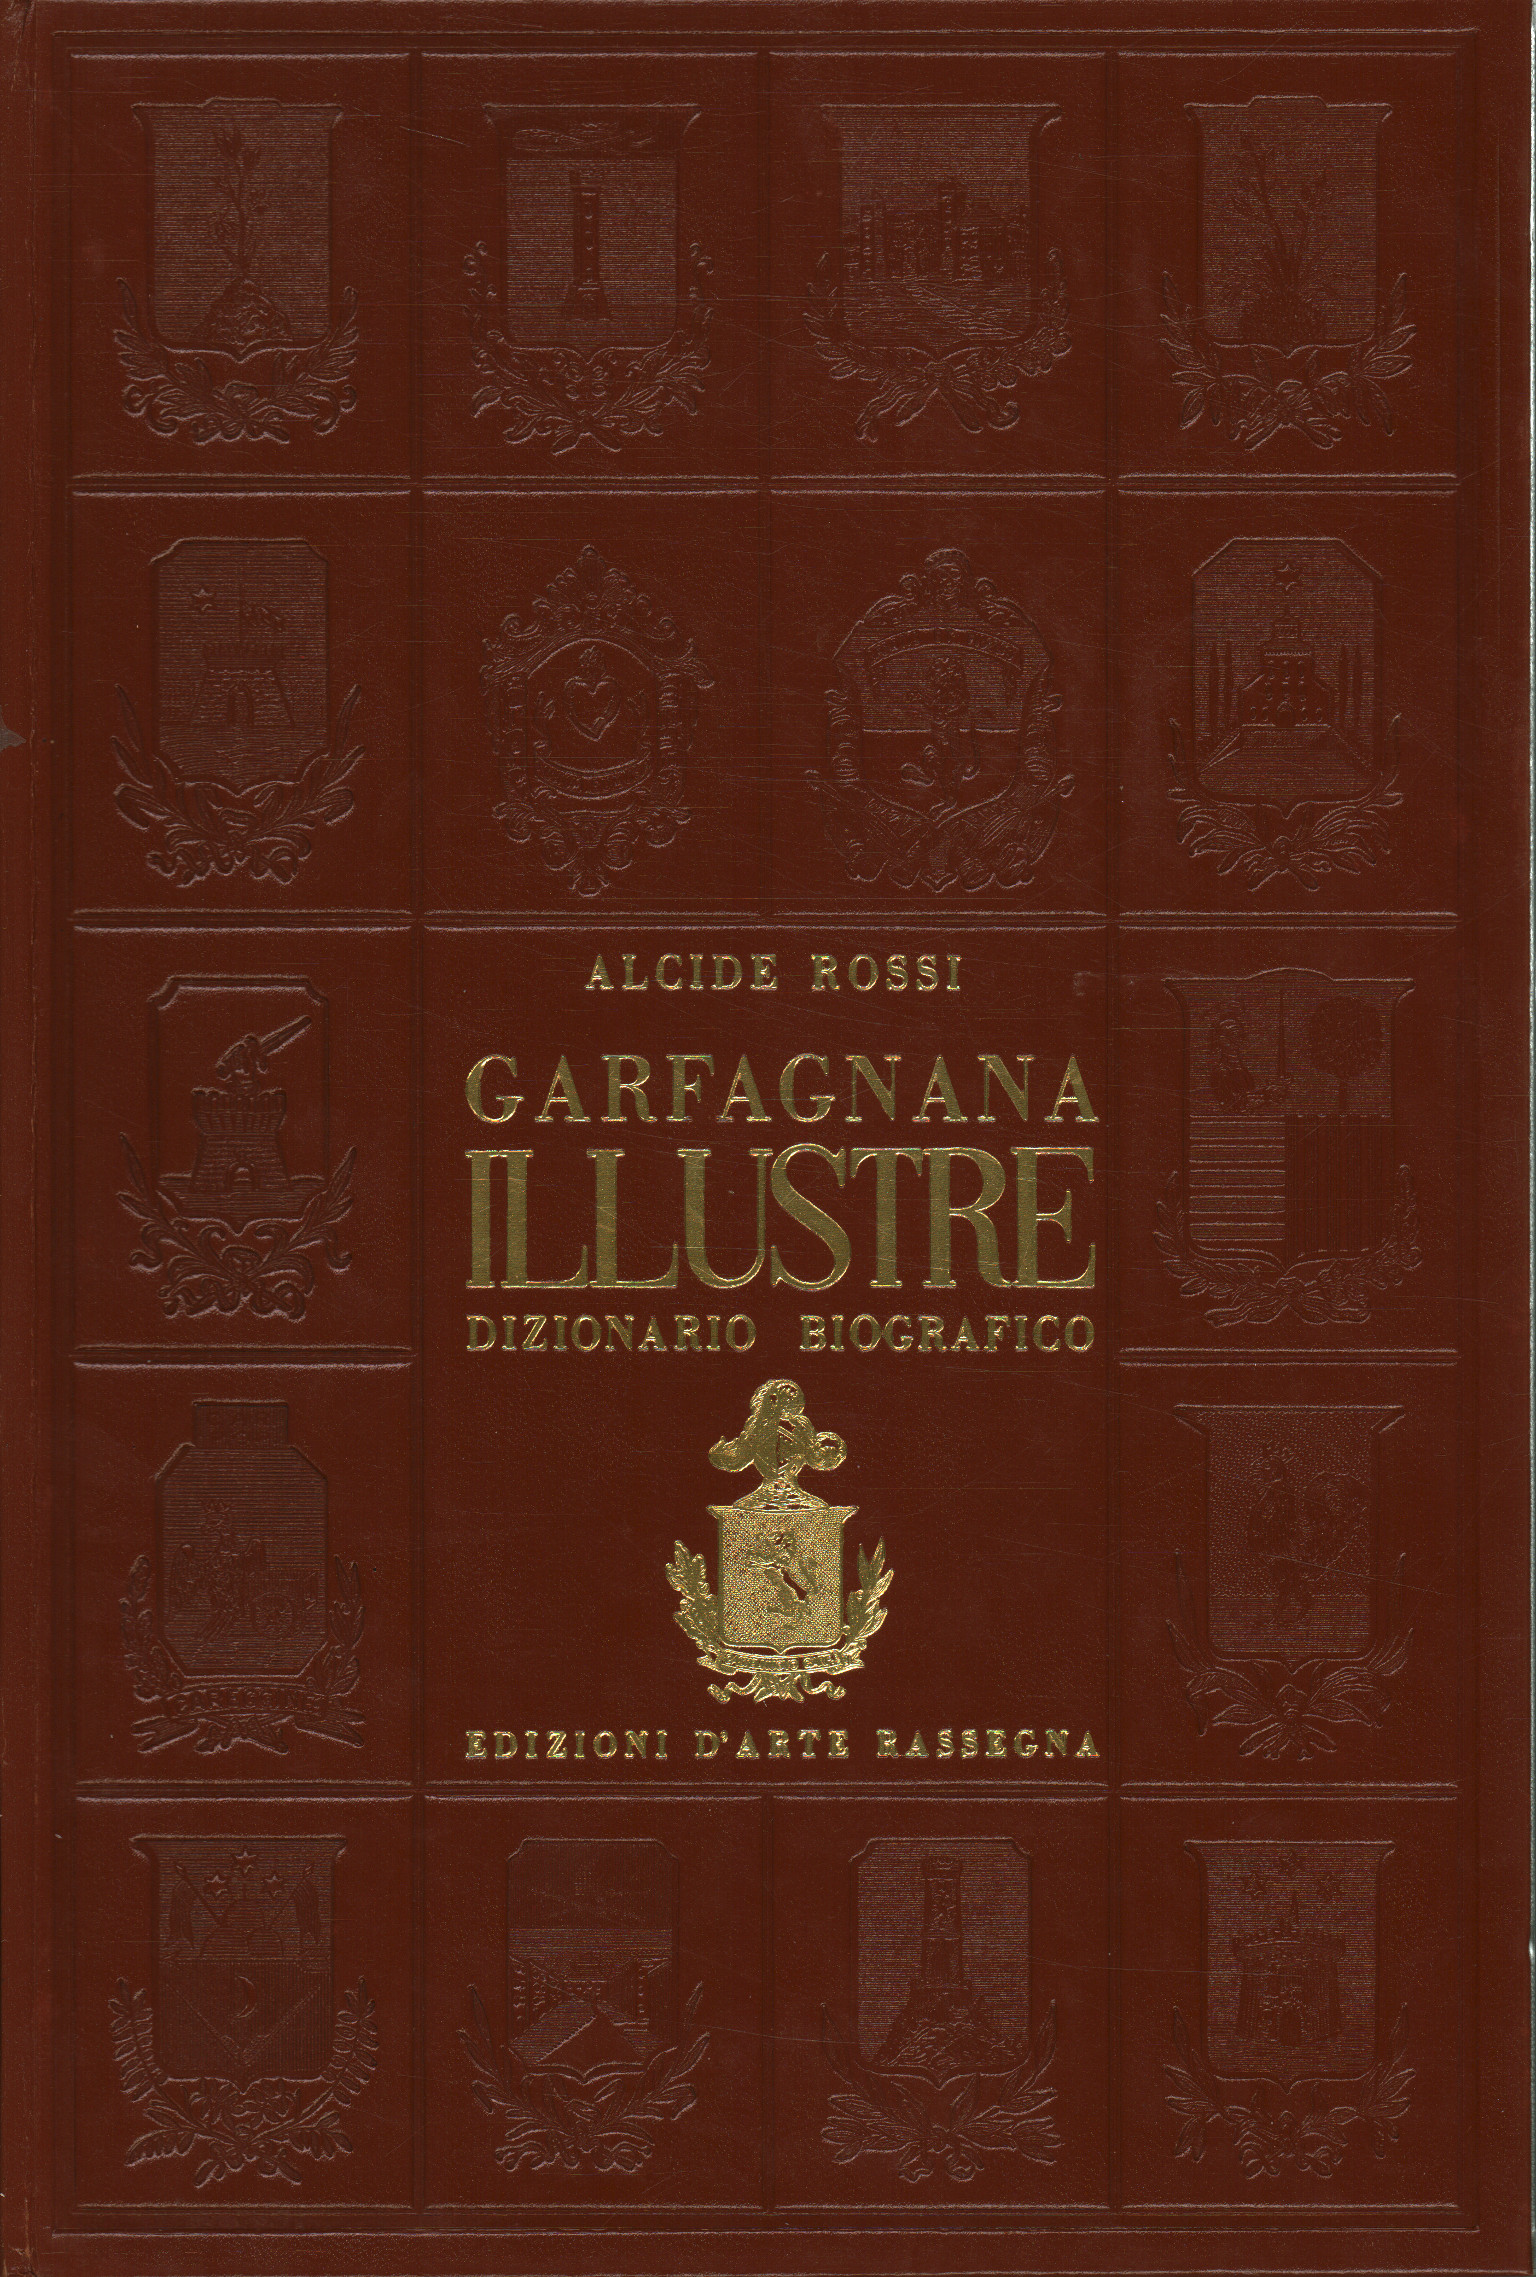 Illustre Garfagnana. Biographisches Lexikon